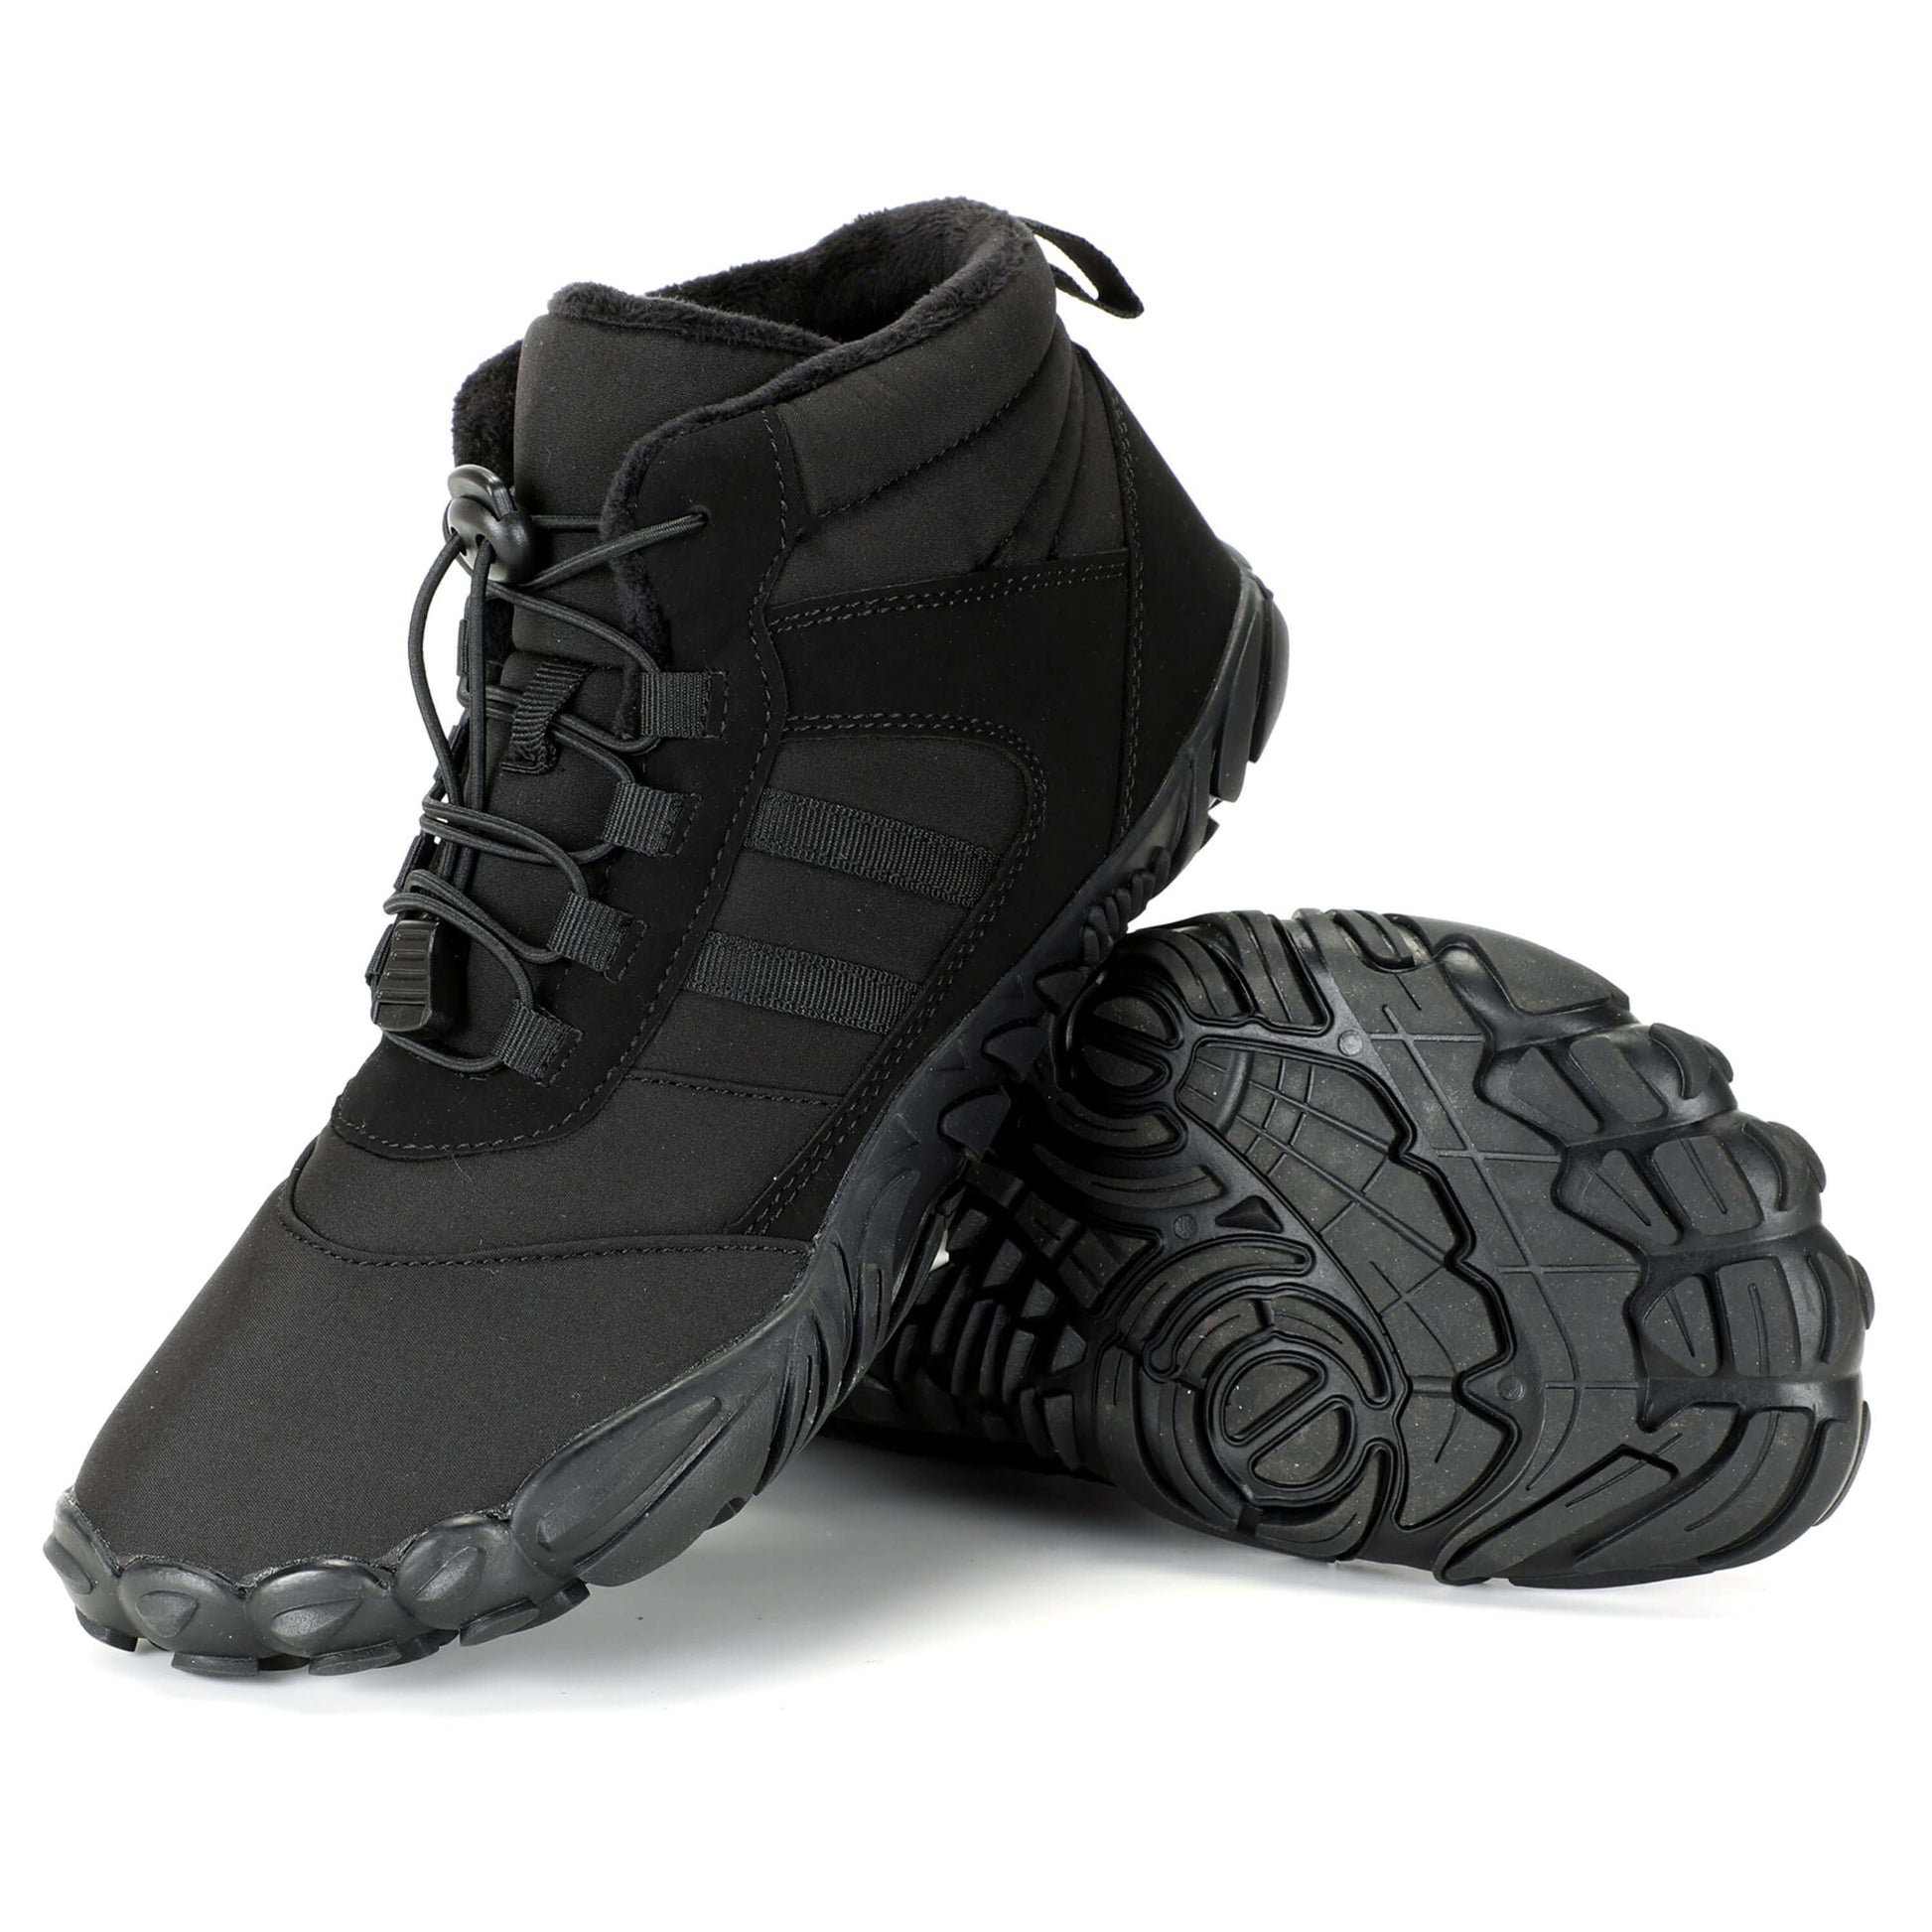 Winter Pro - Waterproof Barefoot Shoes